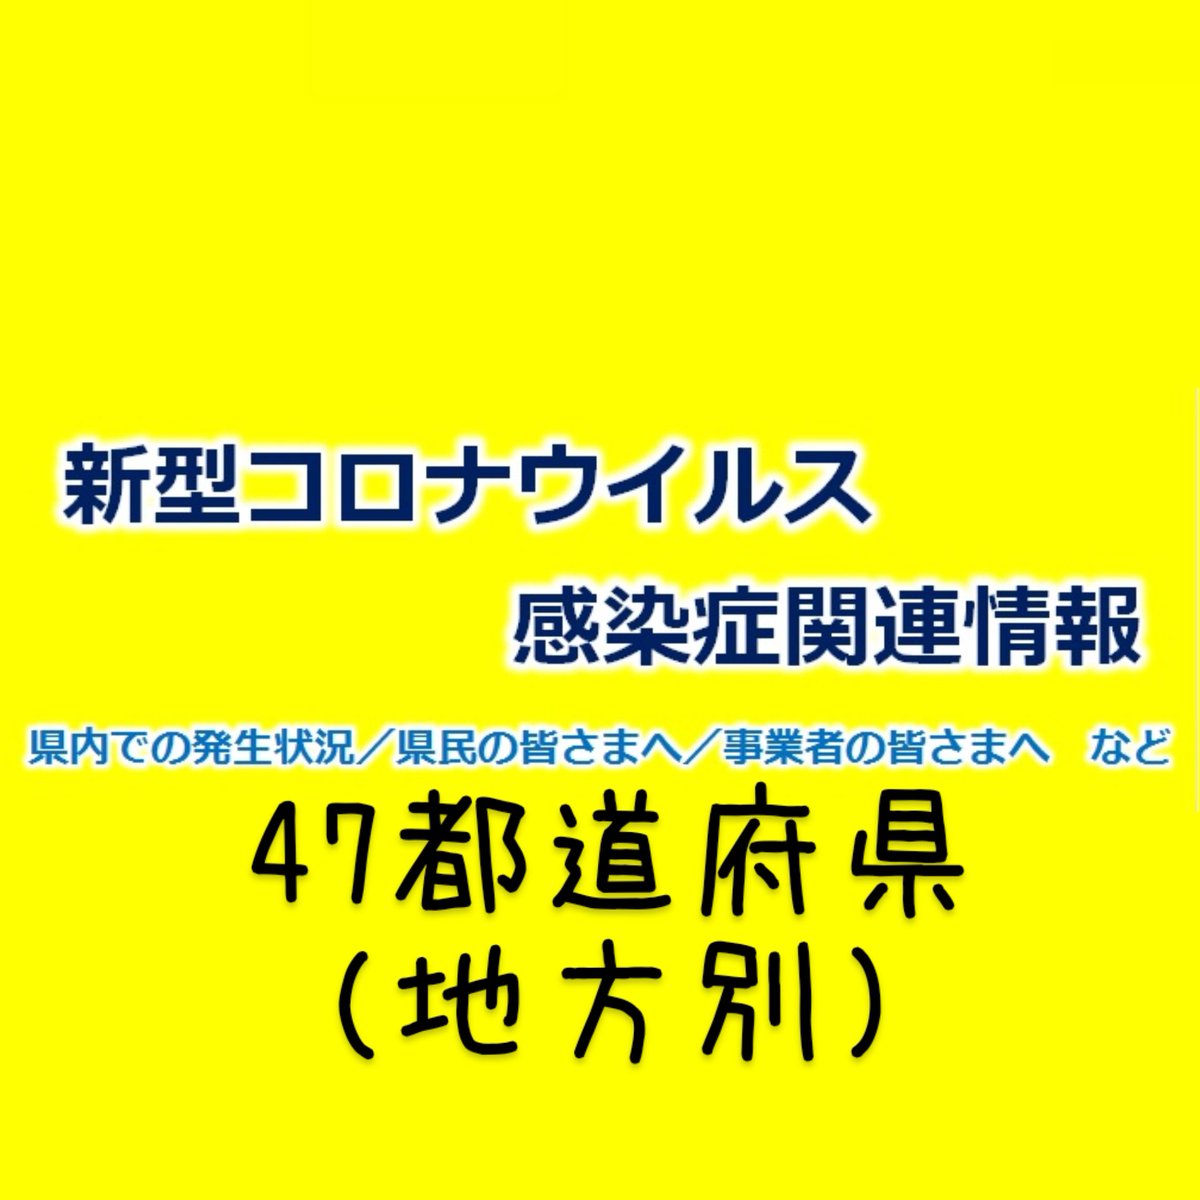 47都道府県 地方別 新型コロナウイルス 関連情報